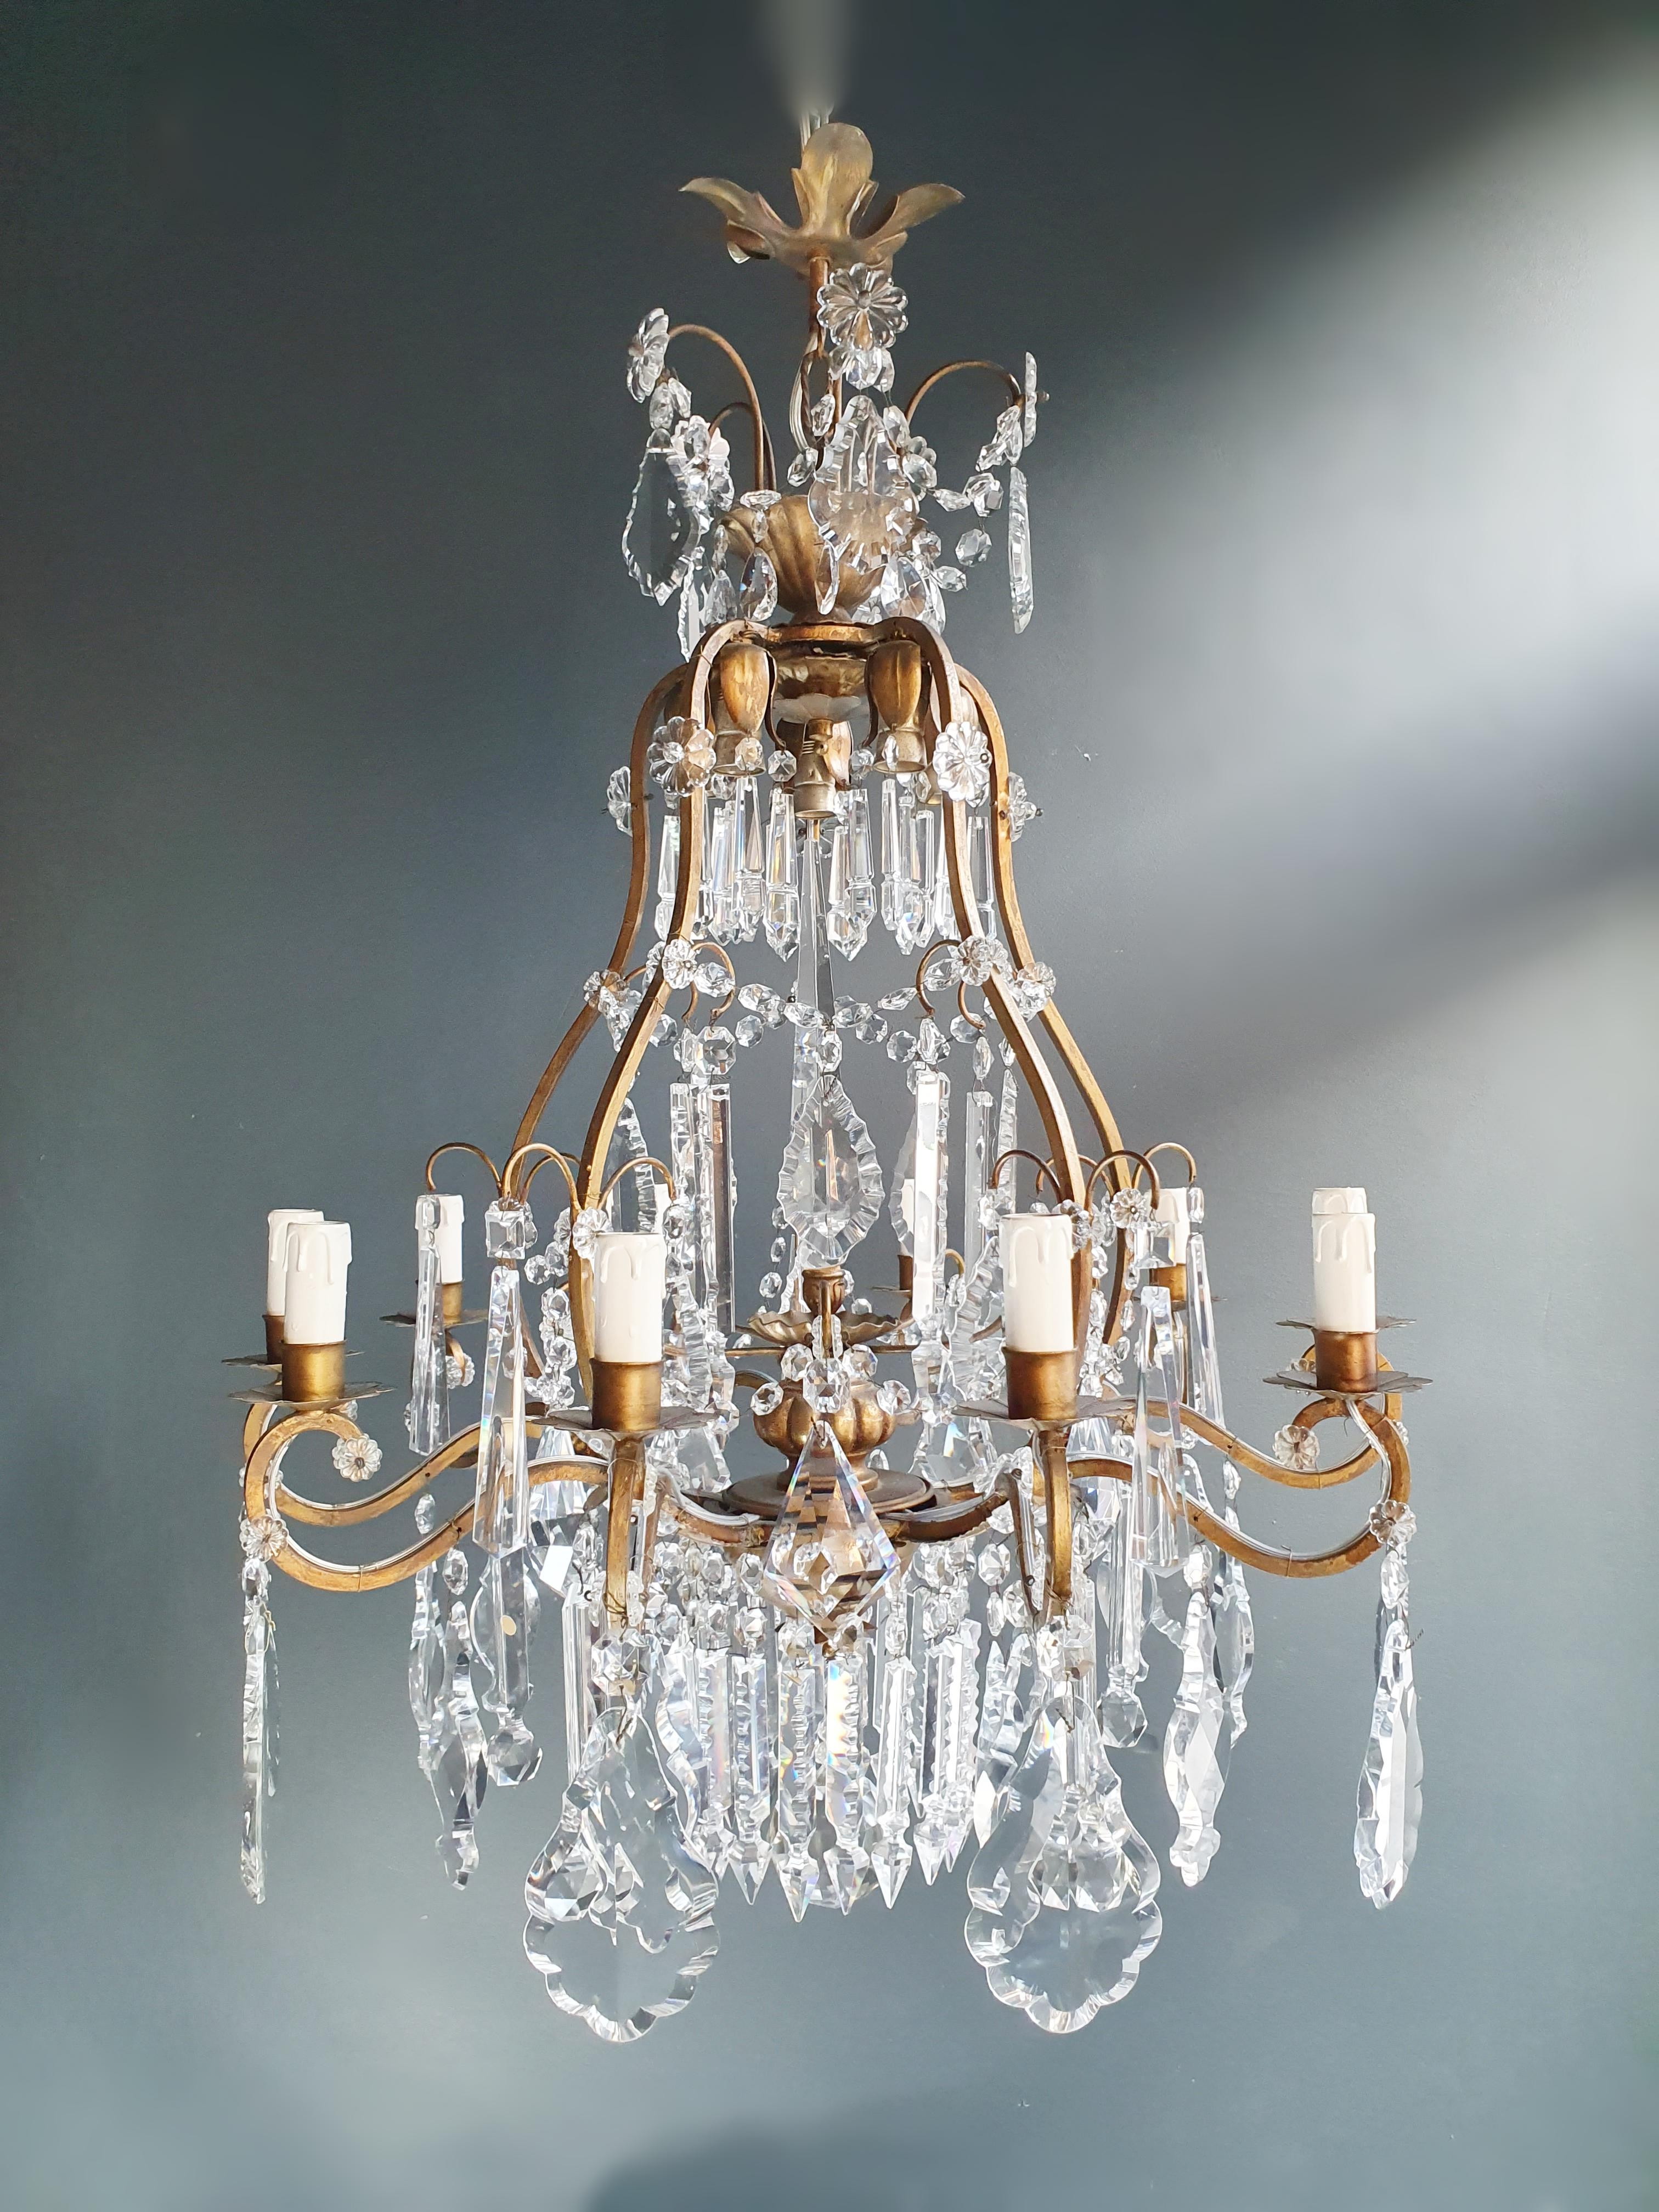 Fine Brass Crystal Chandelier Antique Ceiling Lamp Lustre Art Nouveau Lamp, 1900 For Sale 1